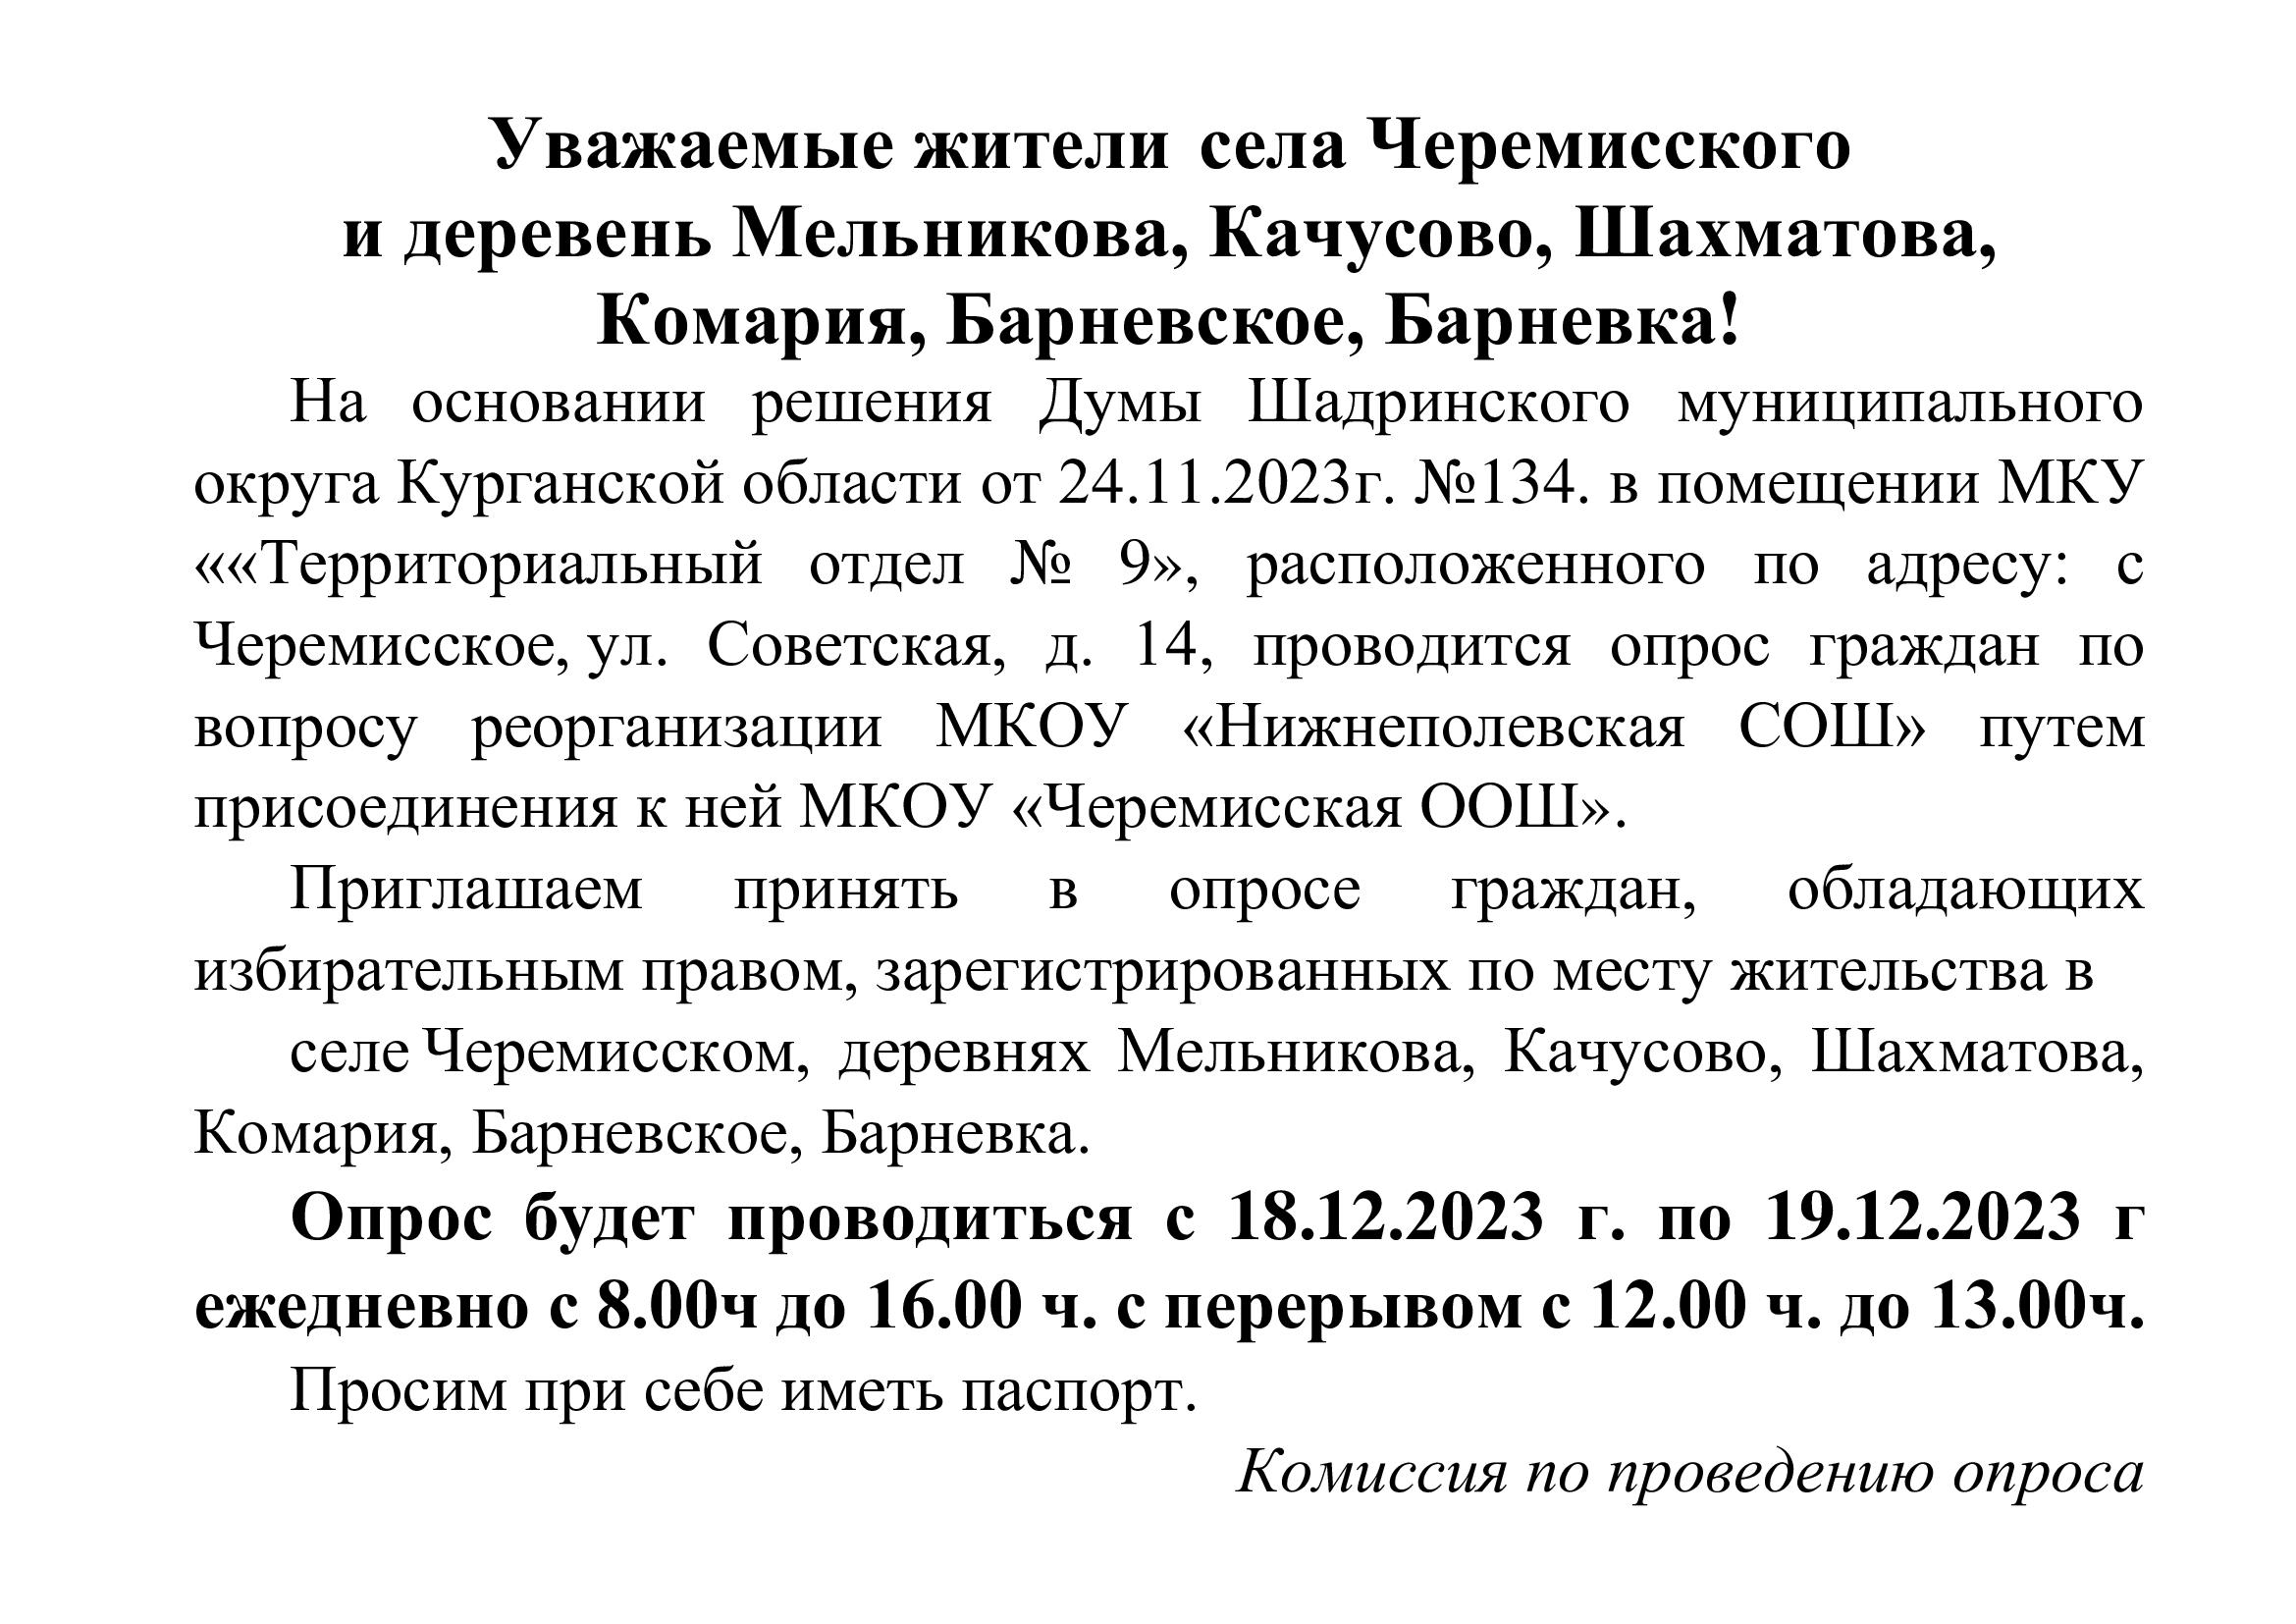 Опрос по реорганизации МКОУ &amp;quot;Черемисская ООШ&amp;quot;.